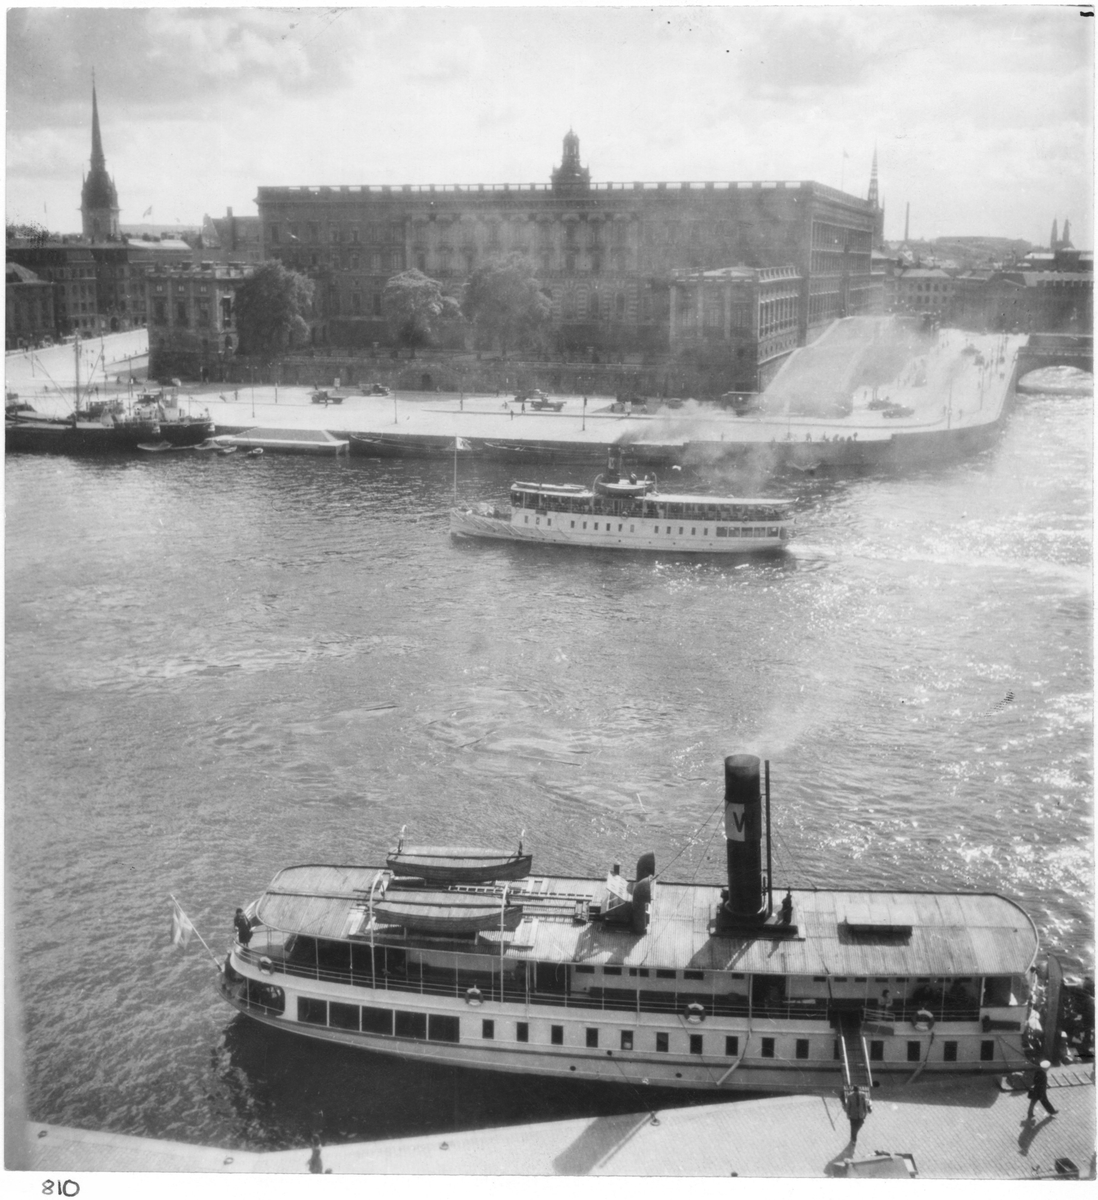 Stockholms stott med skärgårdsbåtar i förgrunden.
Vy över Strömmen.